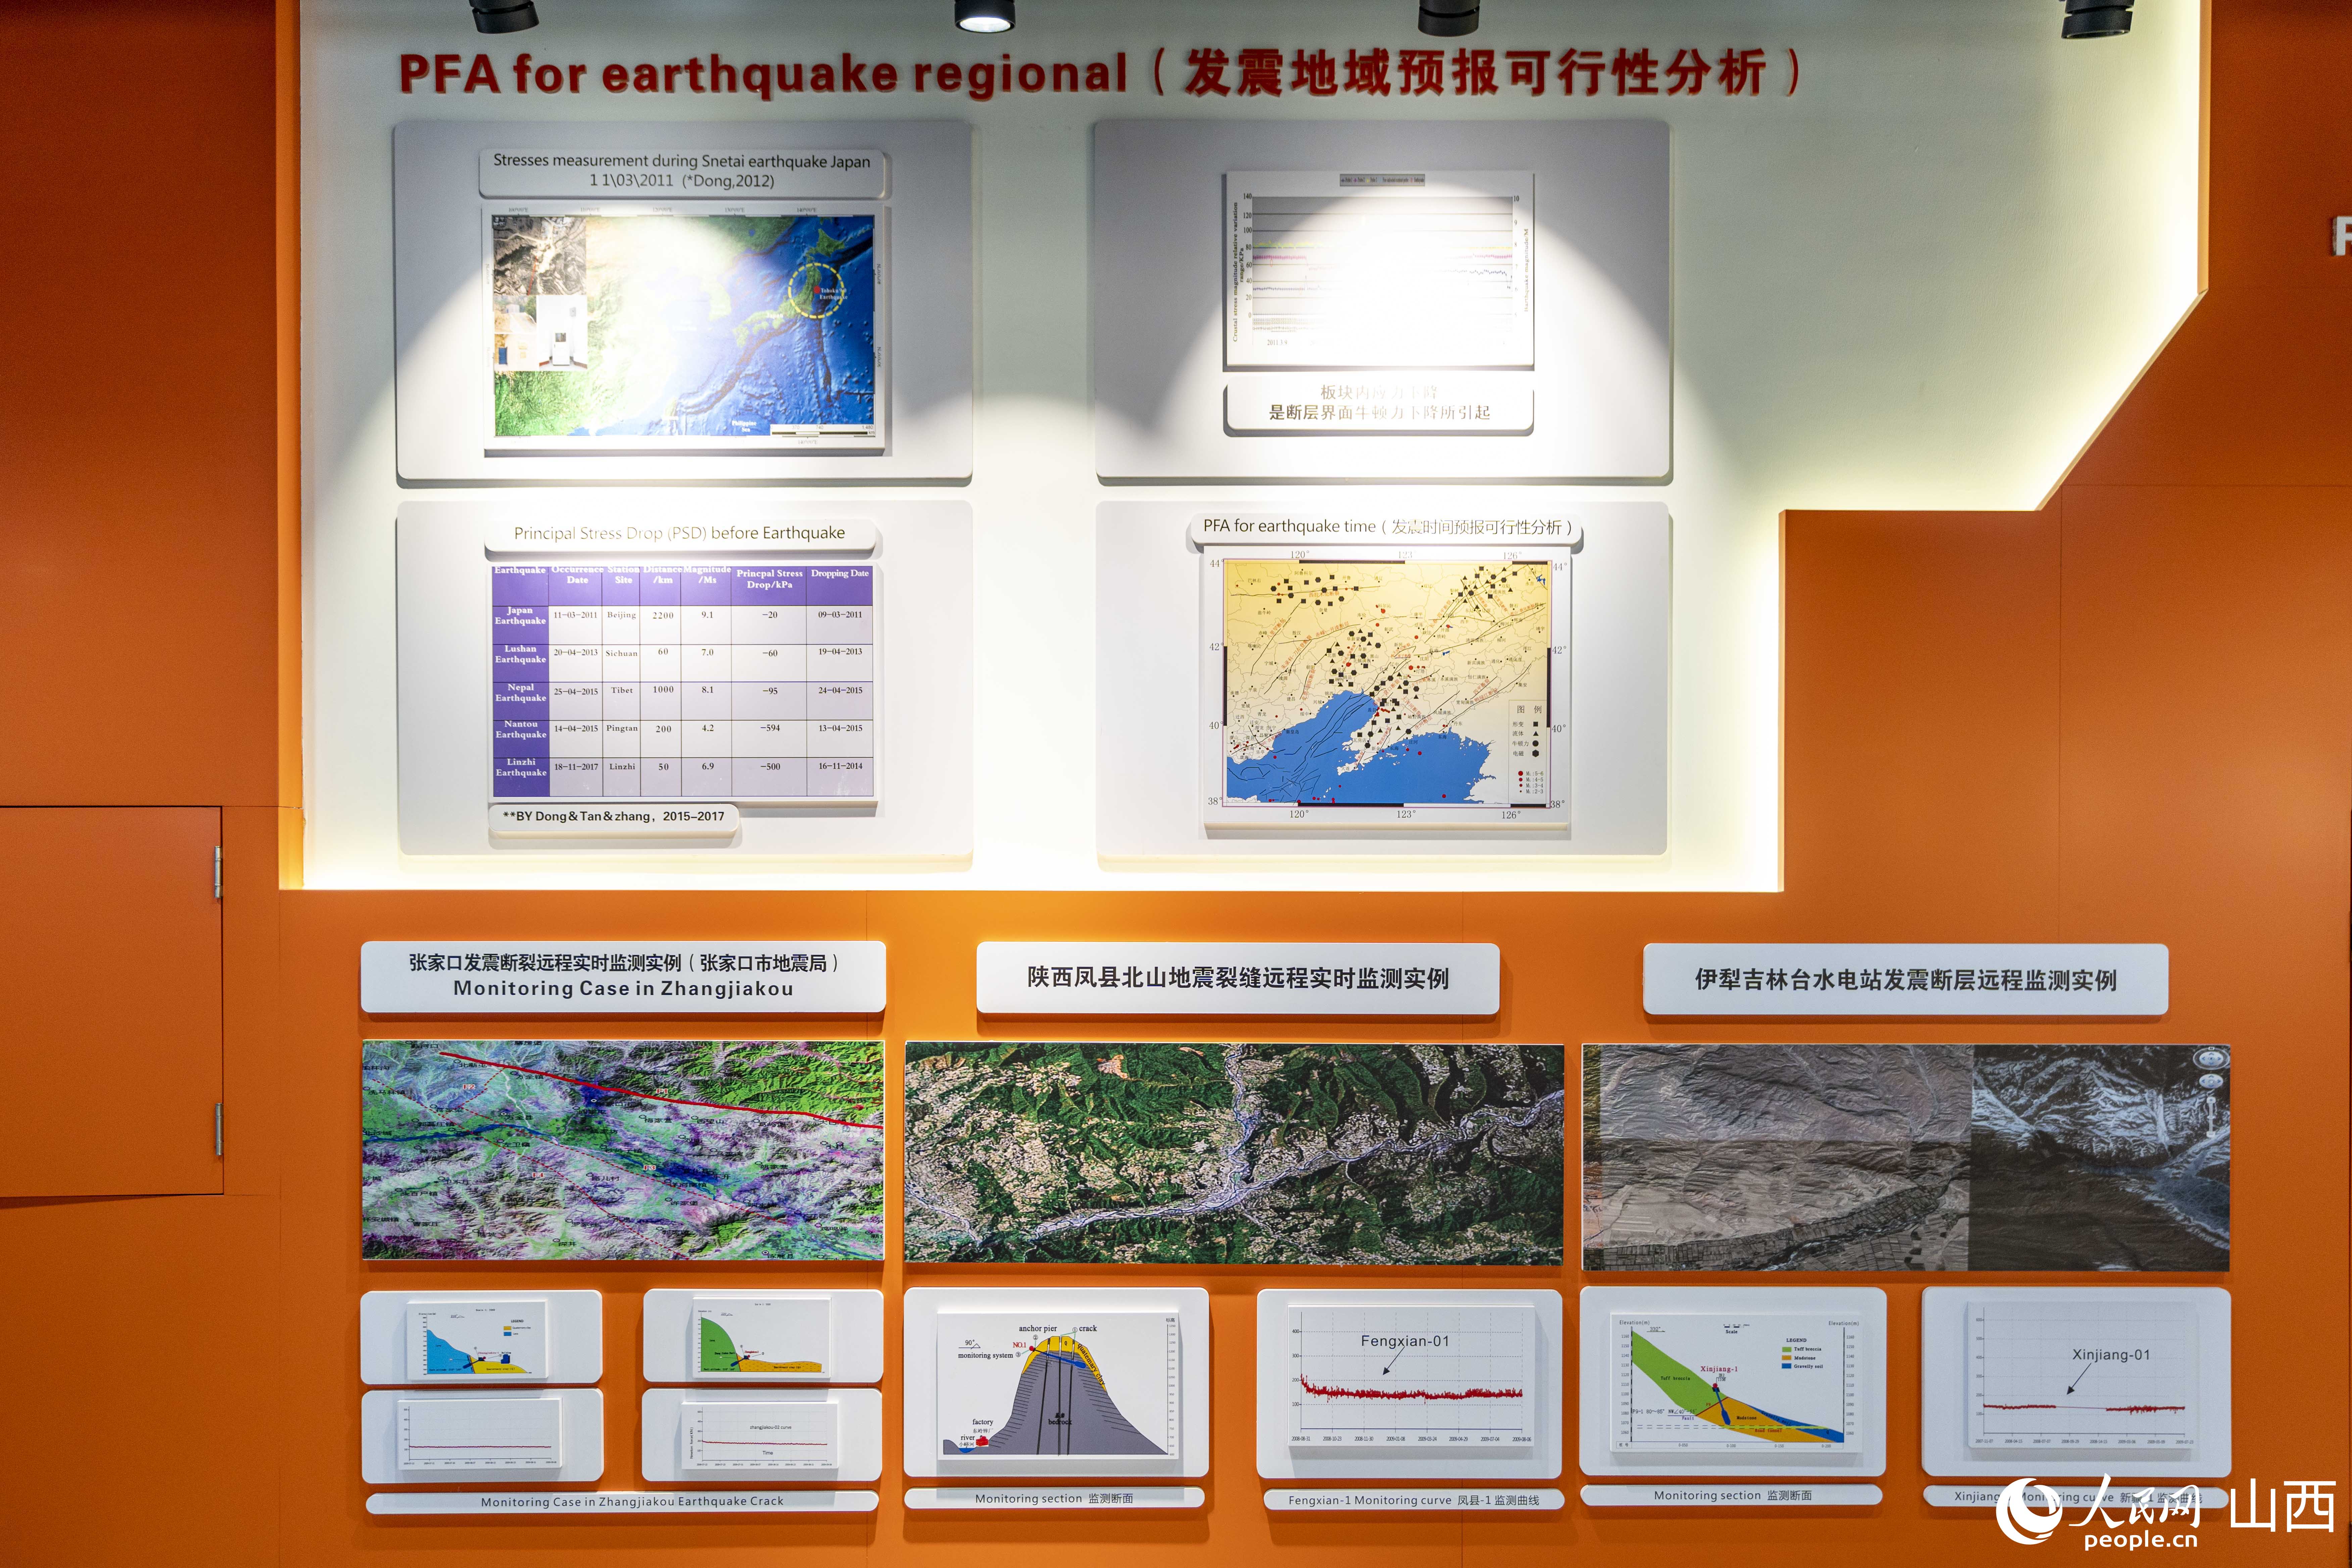 “吕梁专家港”科研成果展示区：发震断层监测预警技术。